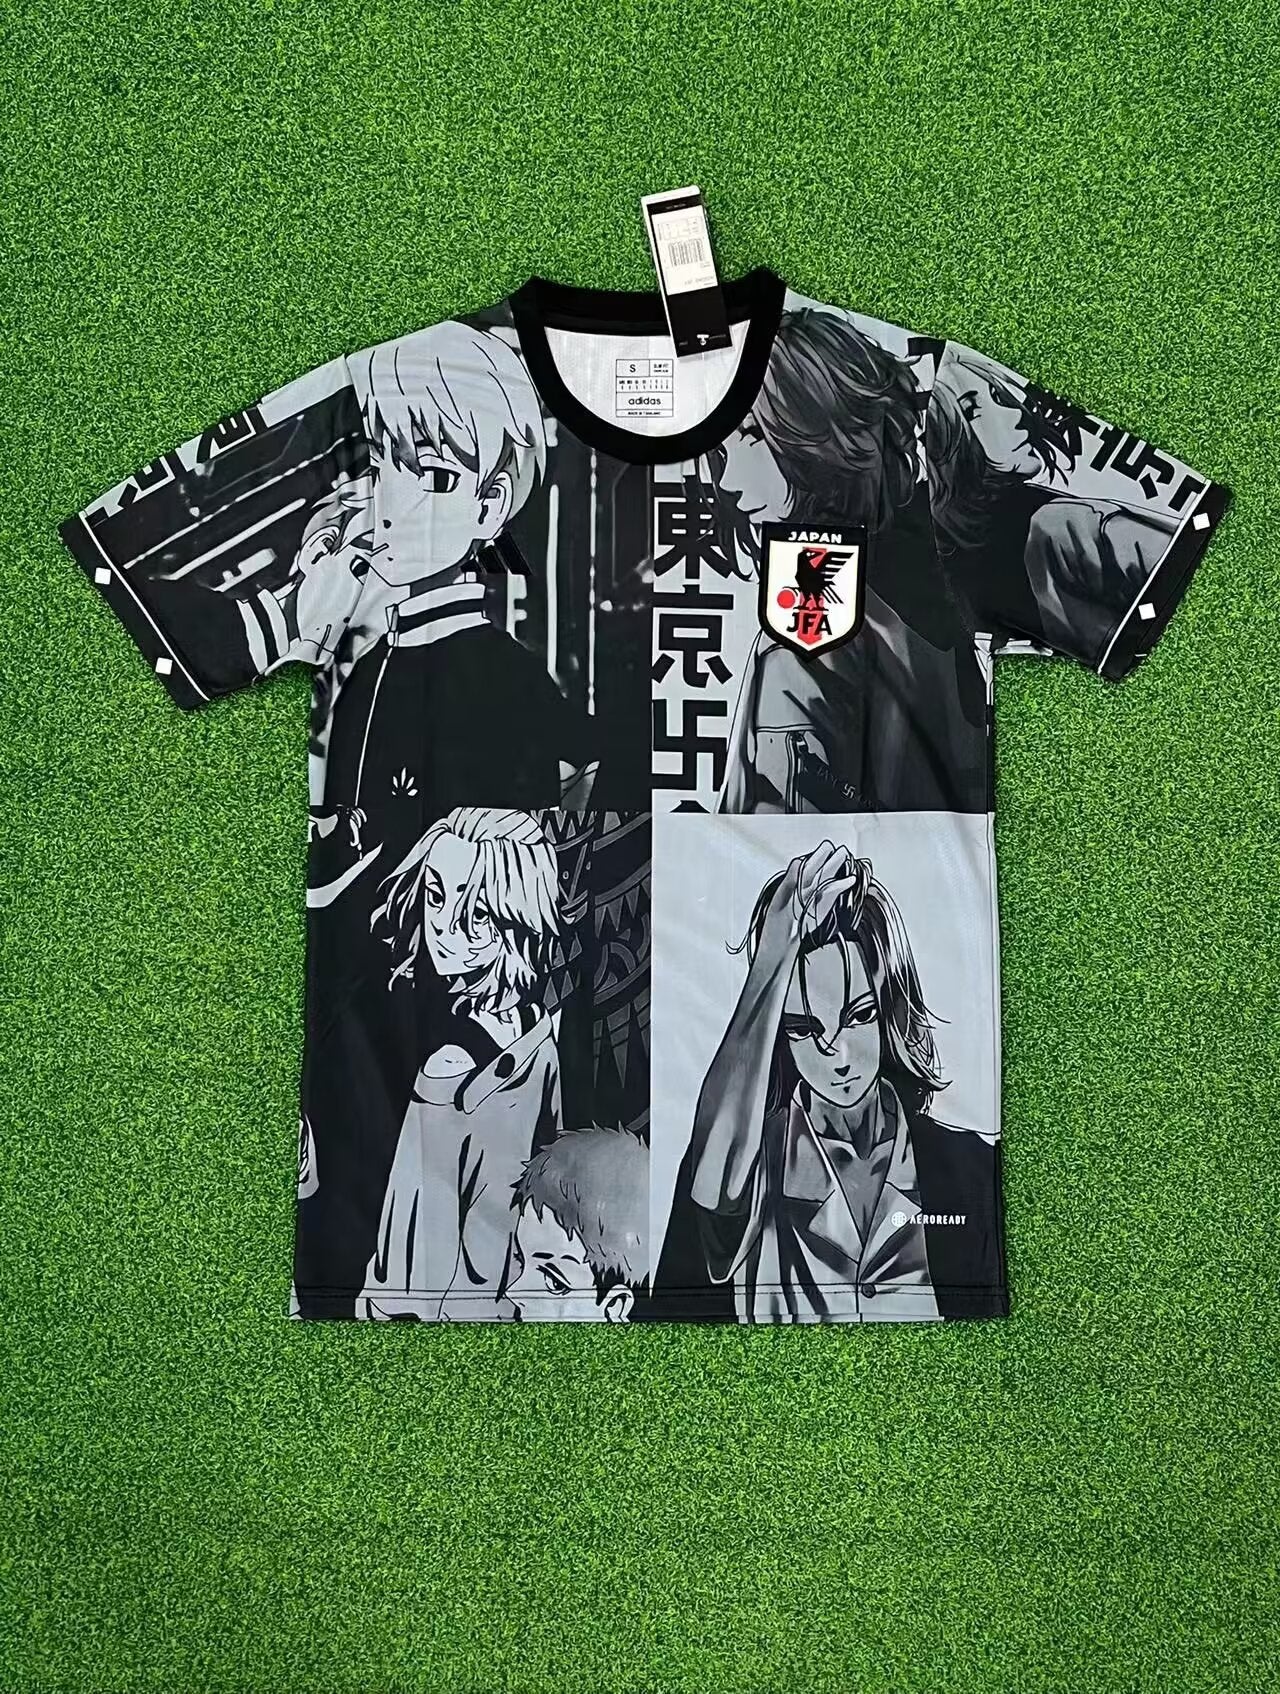 Japan x Anime Shirt Black